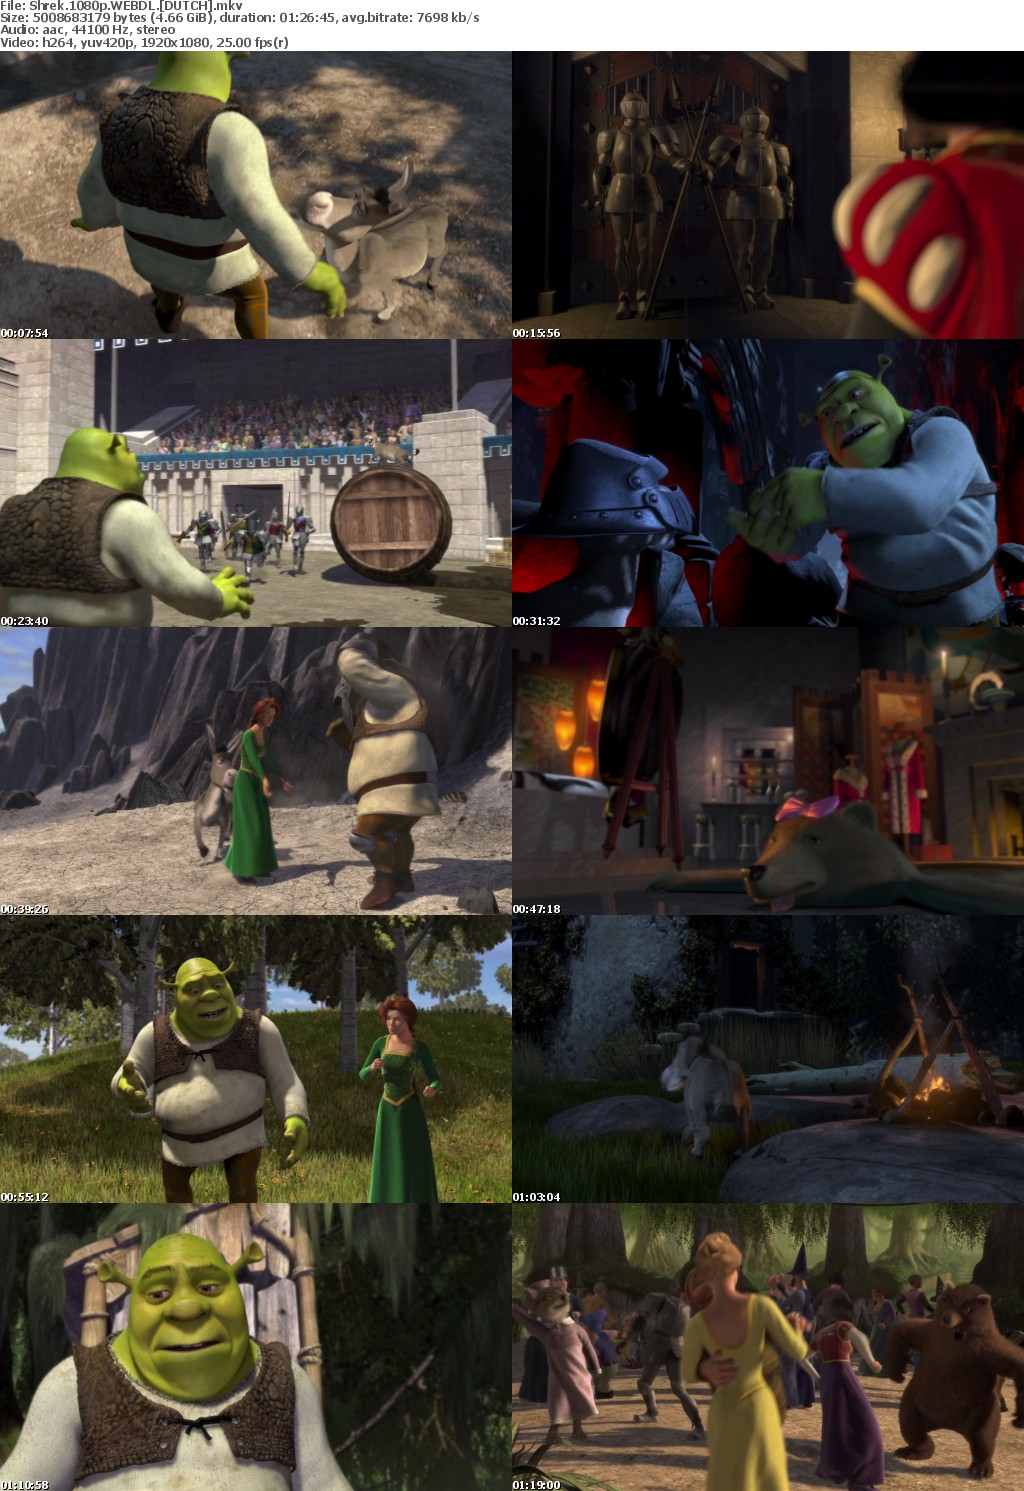 Shrek 1080p WEBDL DUTCH mkv